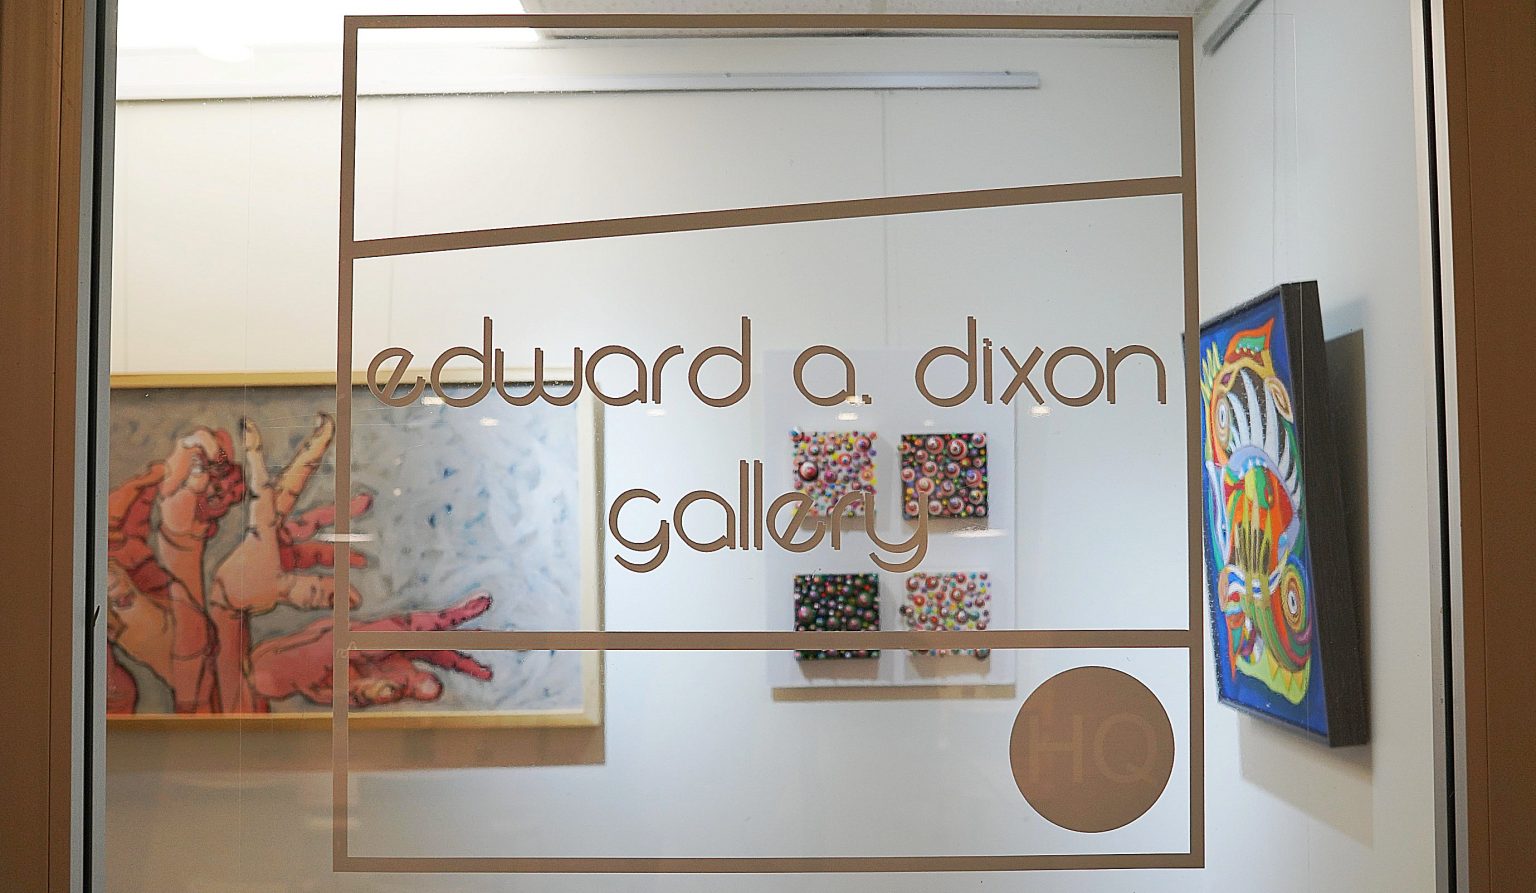 edward a. dixon art gallery entrance